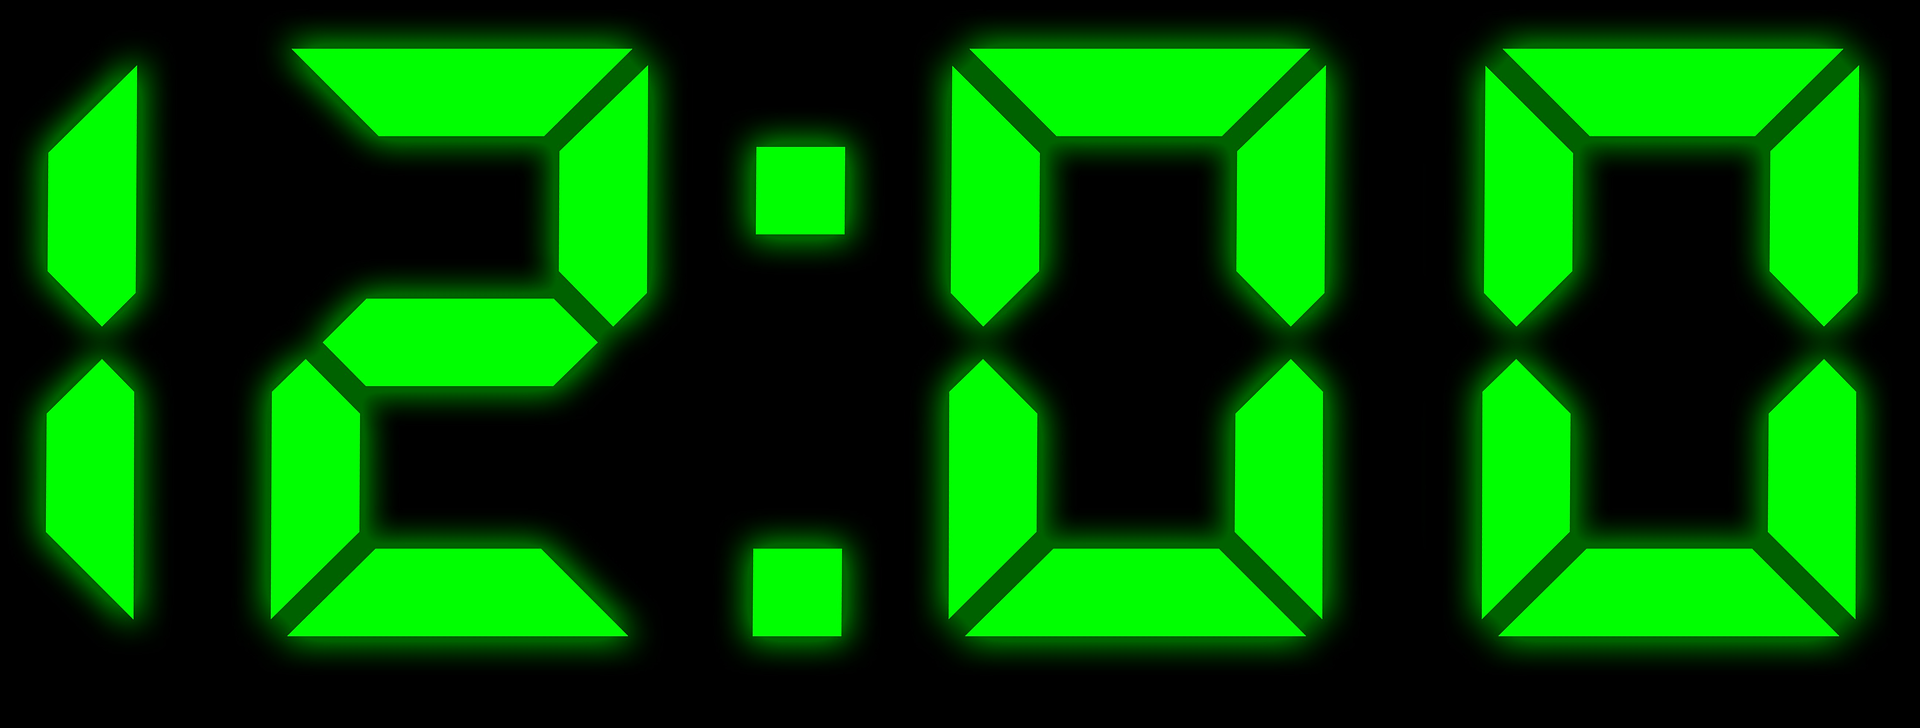 12 00 игра. Цифры электронных часов. Электронные часы зеленые. Часы цифровые зеленые. Электронные часы 12 00.